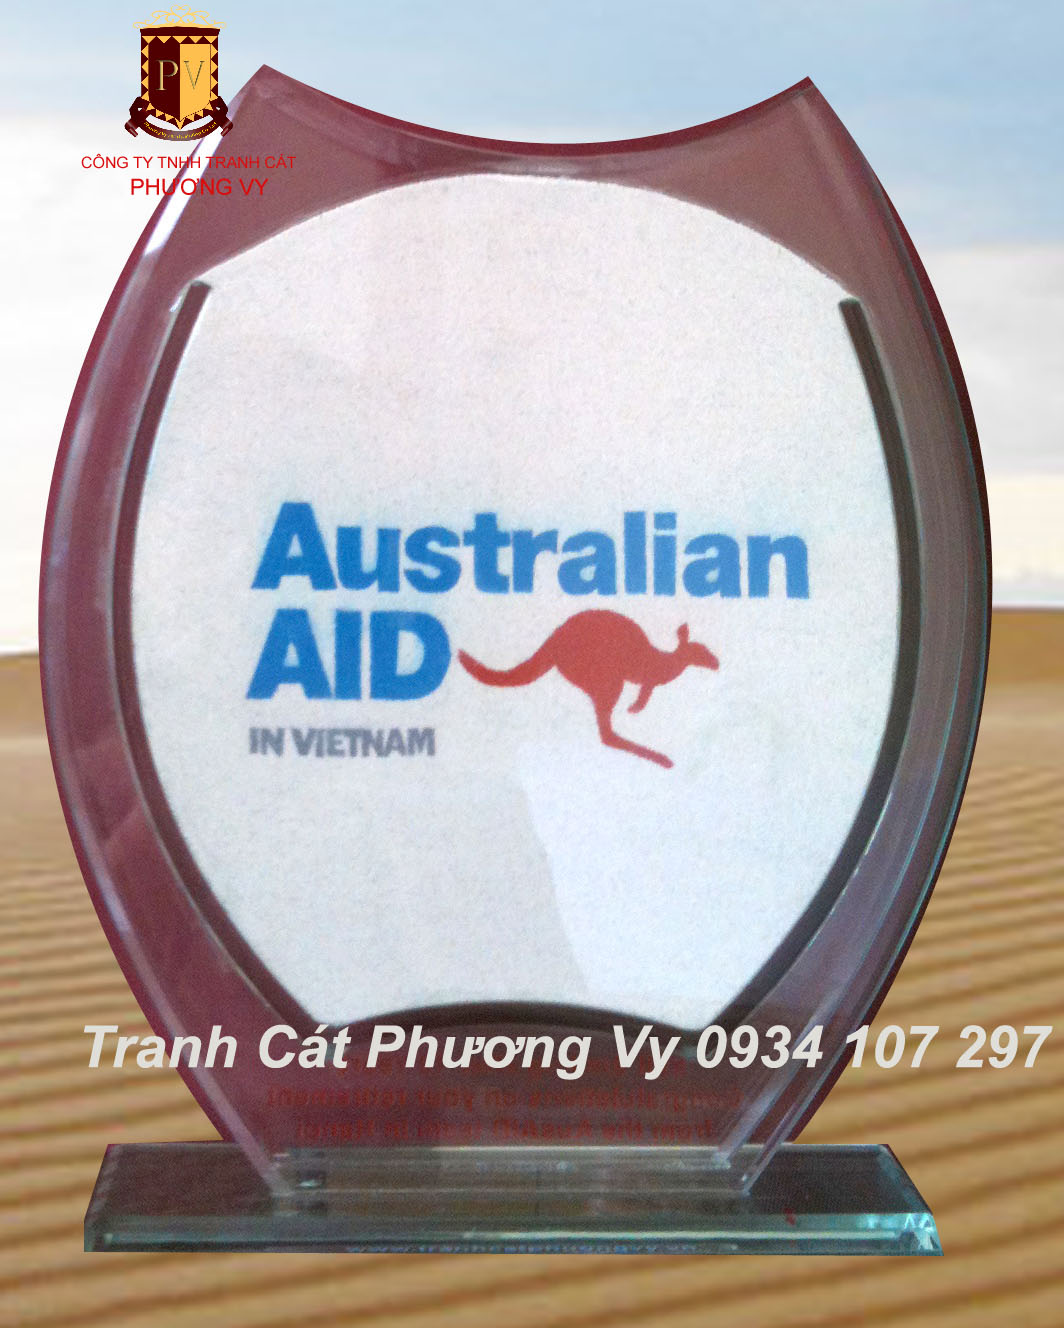 Làm tranh cát logo công ty, doanh nghiệp - Tranh cát biểu tượng Tranh-cat-bieu-tuong-logo-australian-aid-in-vietnam-